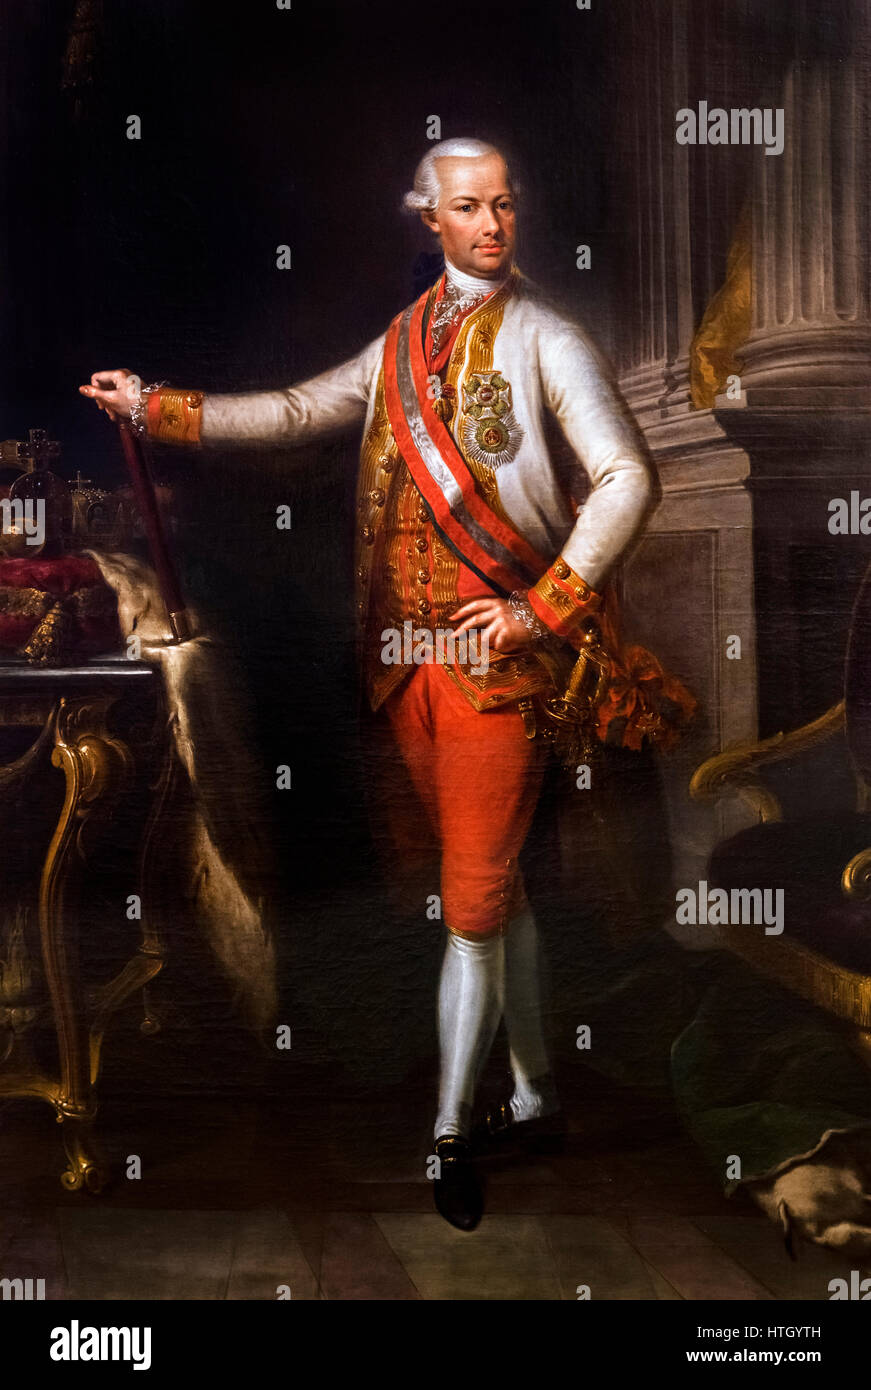 Léopold II (1747-1792), empereur romain germanique, roi de Hongrie et de Bohême, Archiduc d'Autriche et Grand-duc de Toscane. Portrait par un artiste inconnu, huile sur toile, c.1790. Banque D'Images